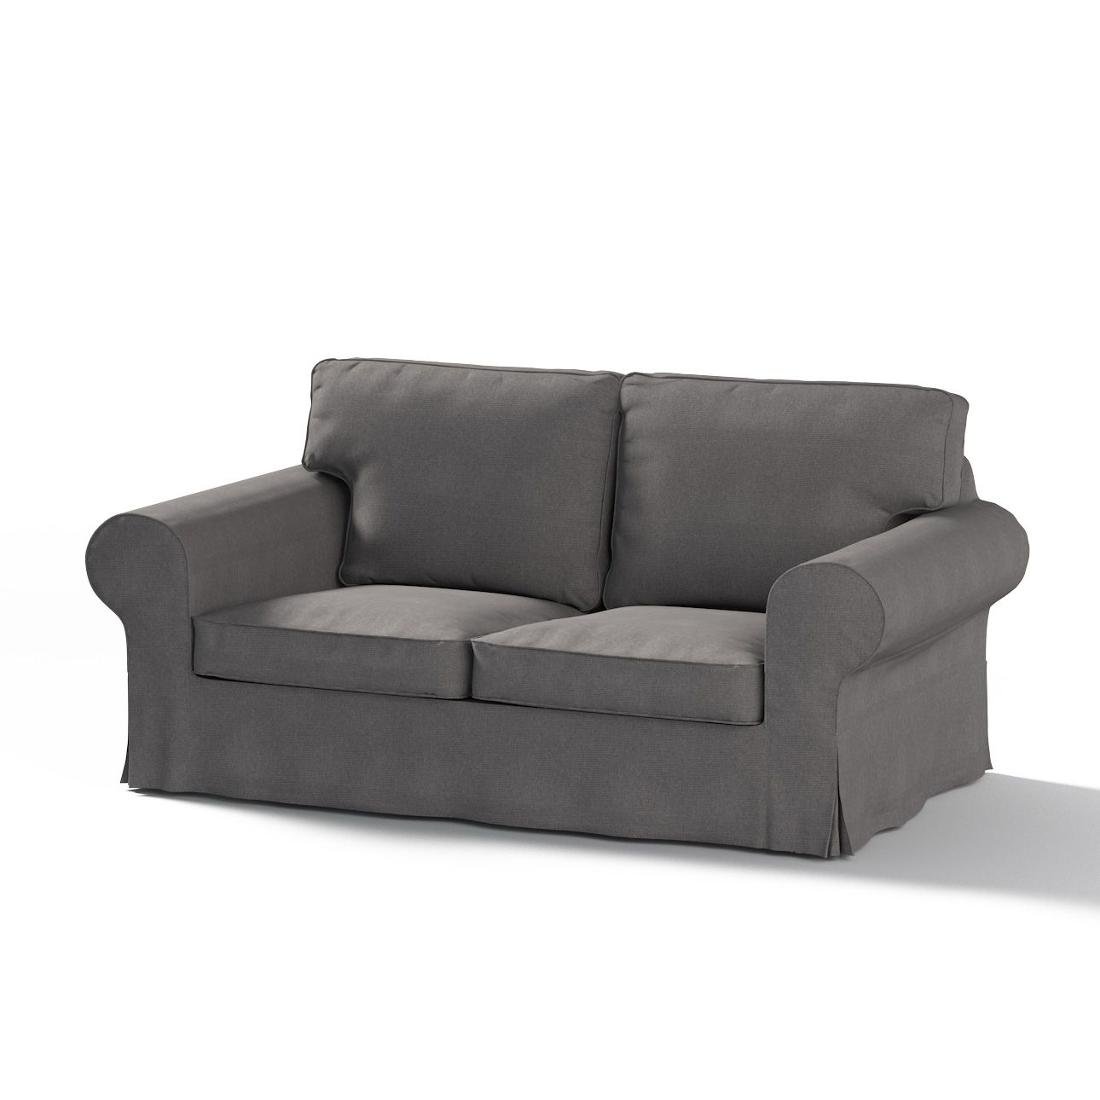 Dekoria Pokrowiec na sofę Ektorp 2-osobową rozkładaną model po 2012 grafitowy 200 x 90 x 73 cm Etna 1016-705-35